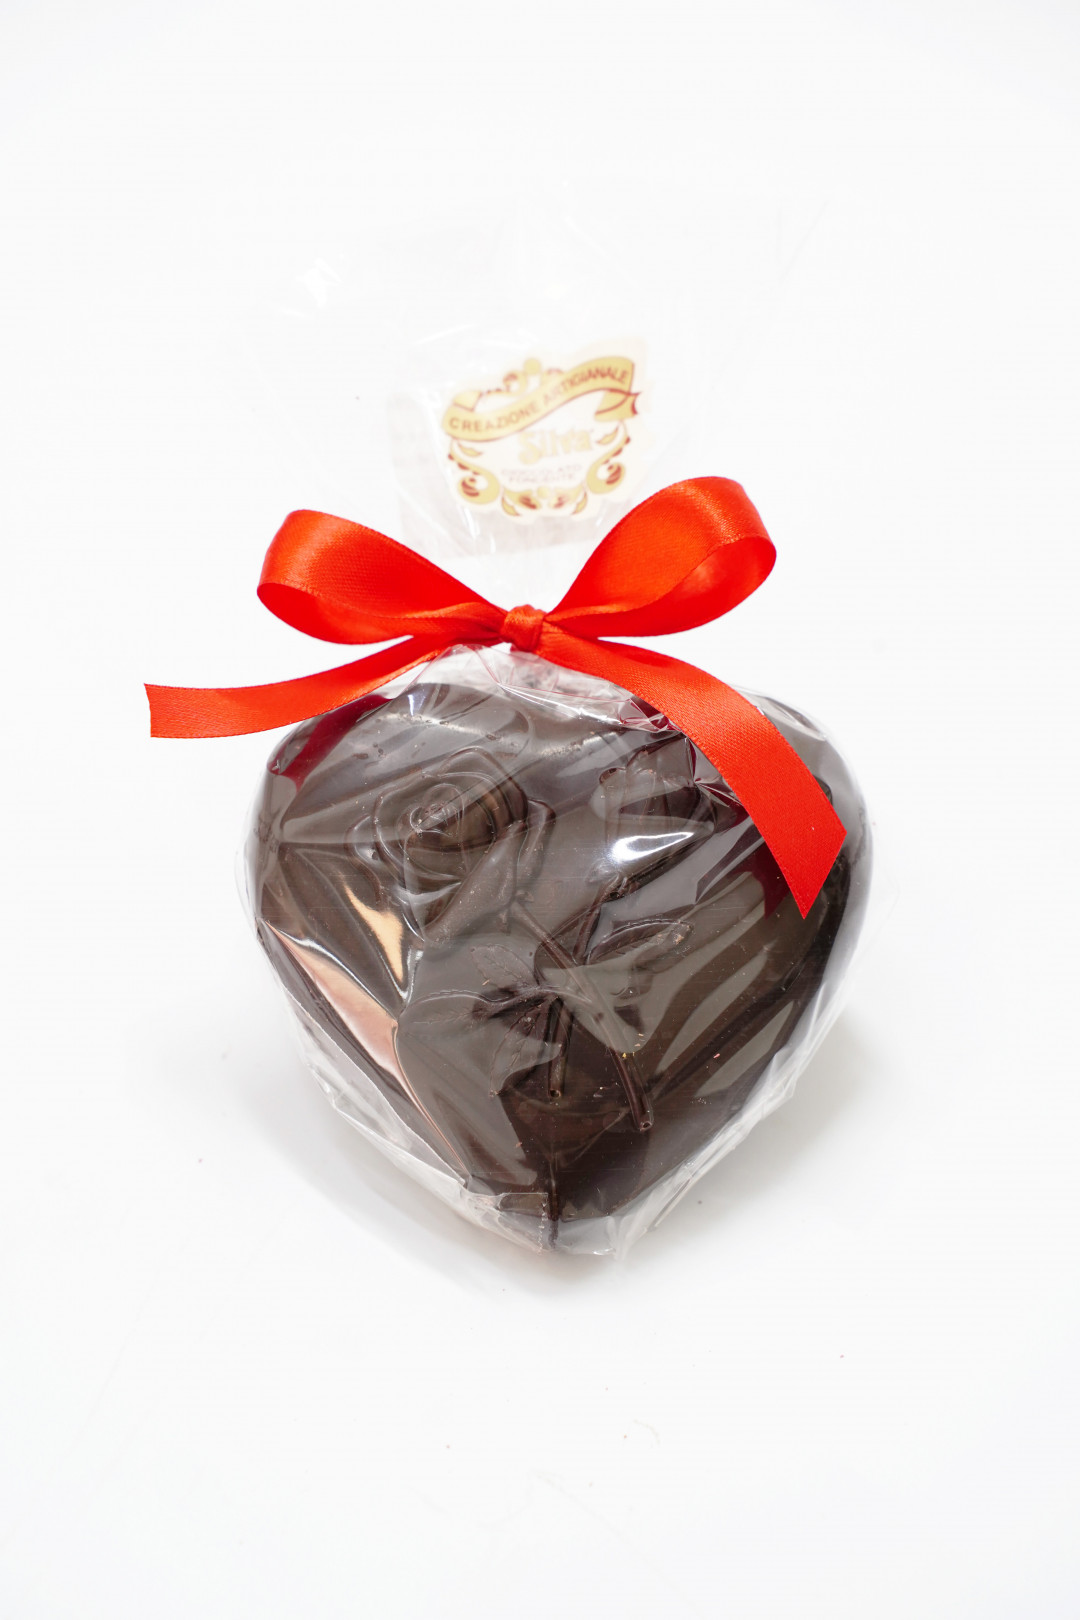 Cuore al cioccolato al fondente artigianale San Valentino gr.80